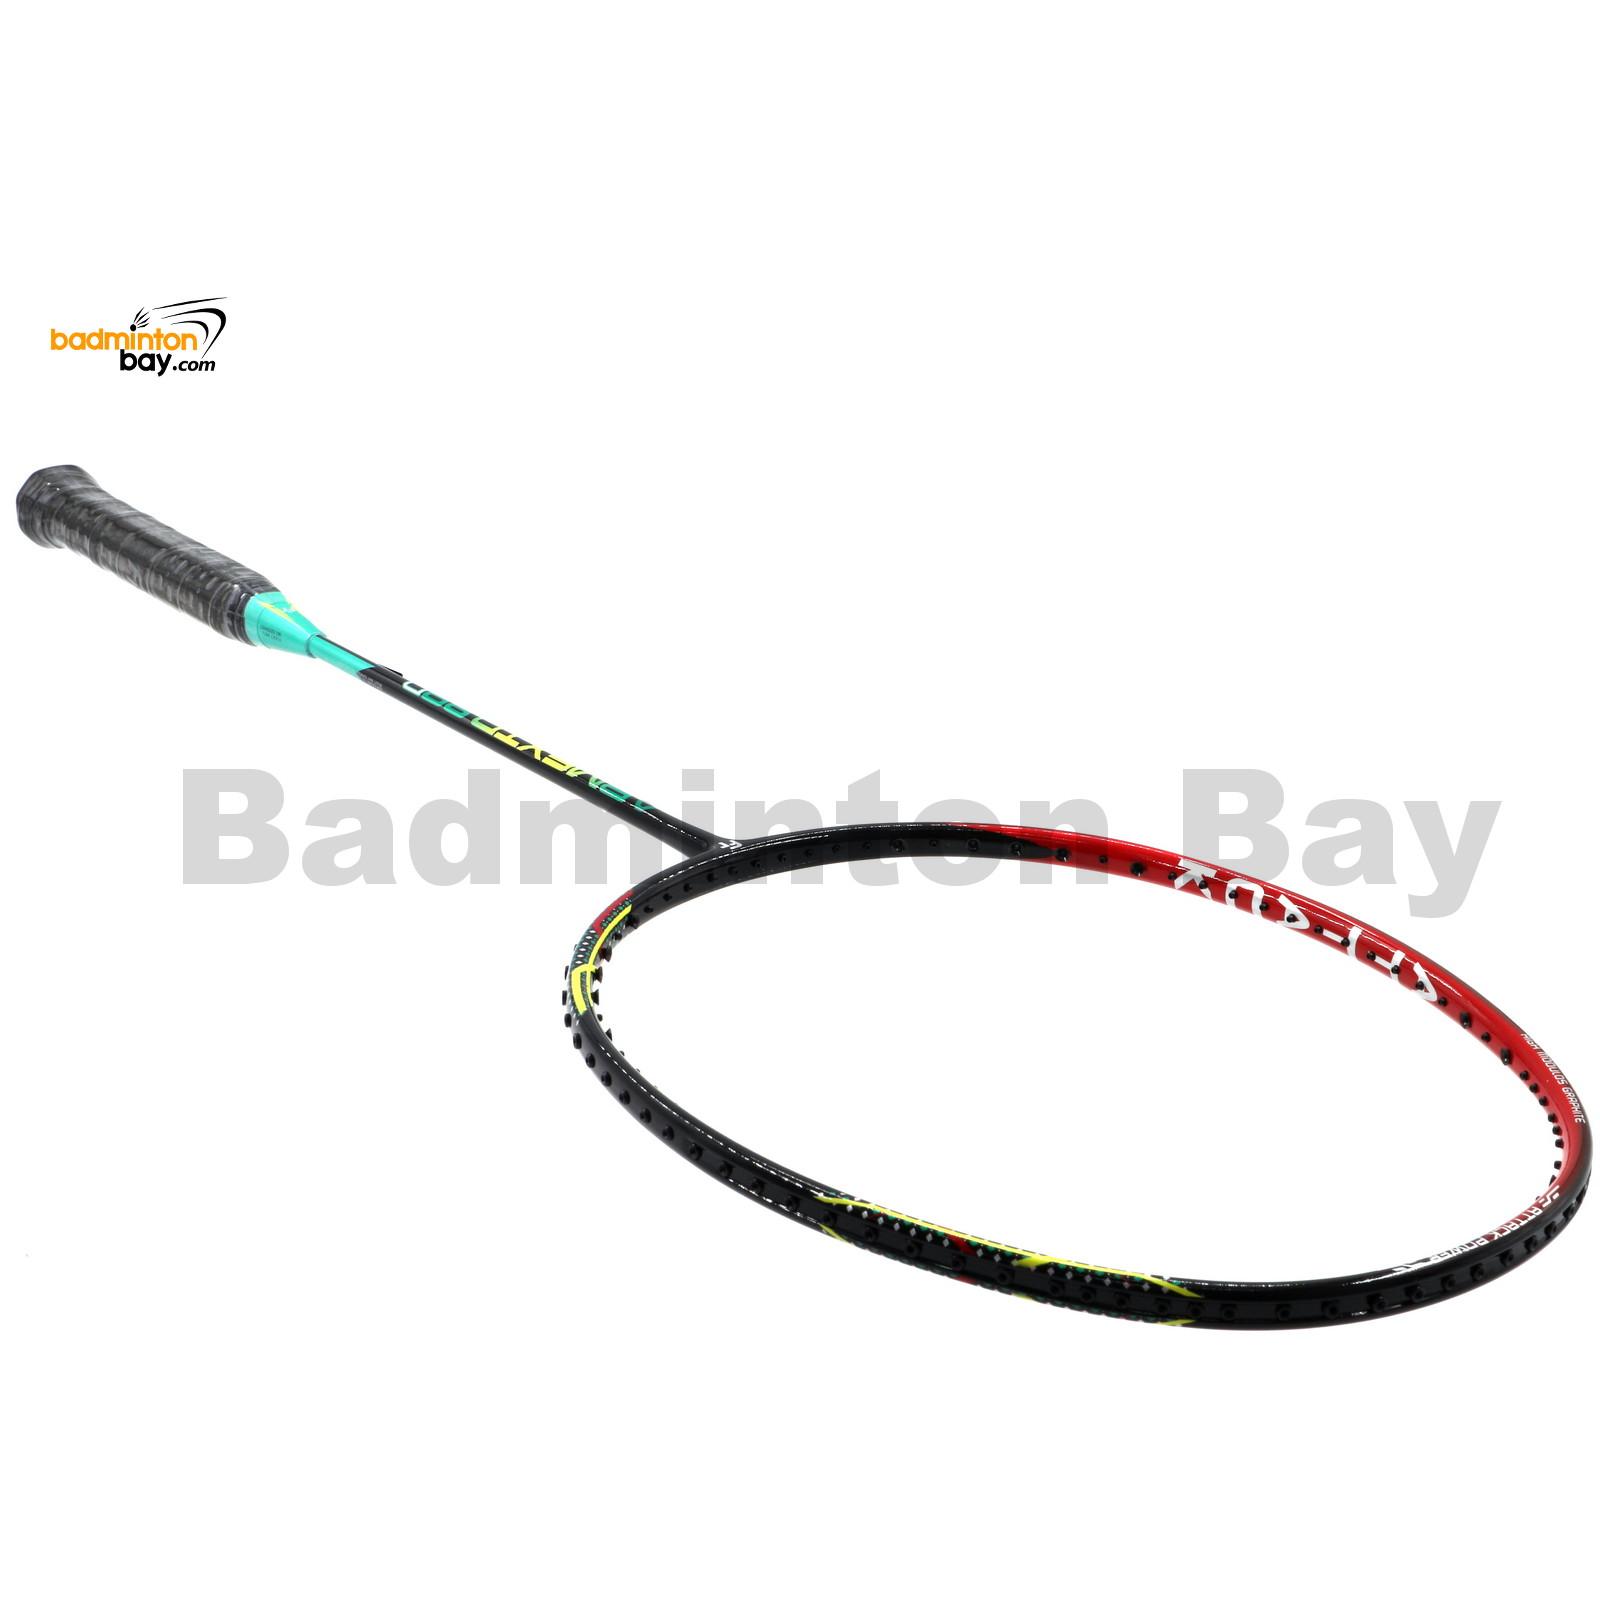 Fleet ArmexTD 89D Red Badminton Racket (4U)